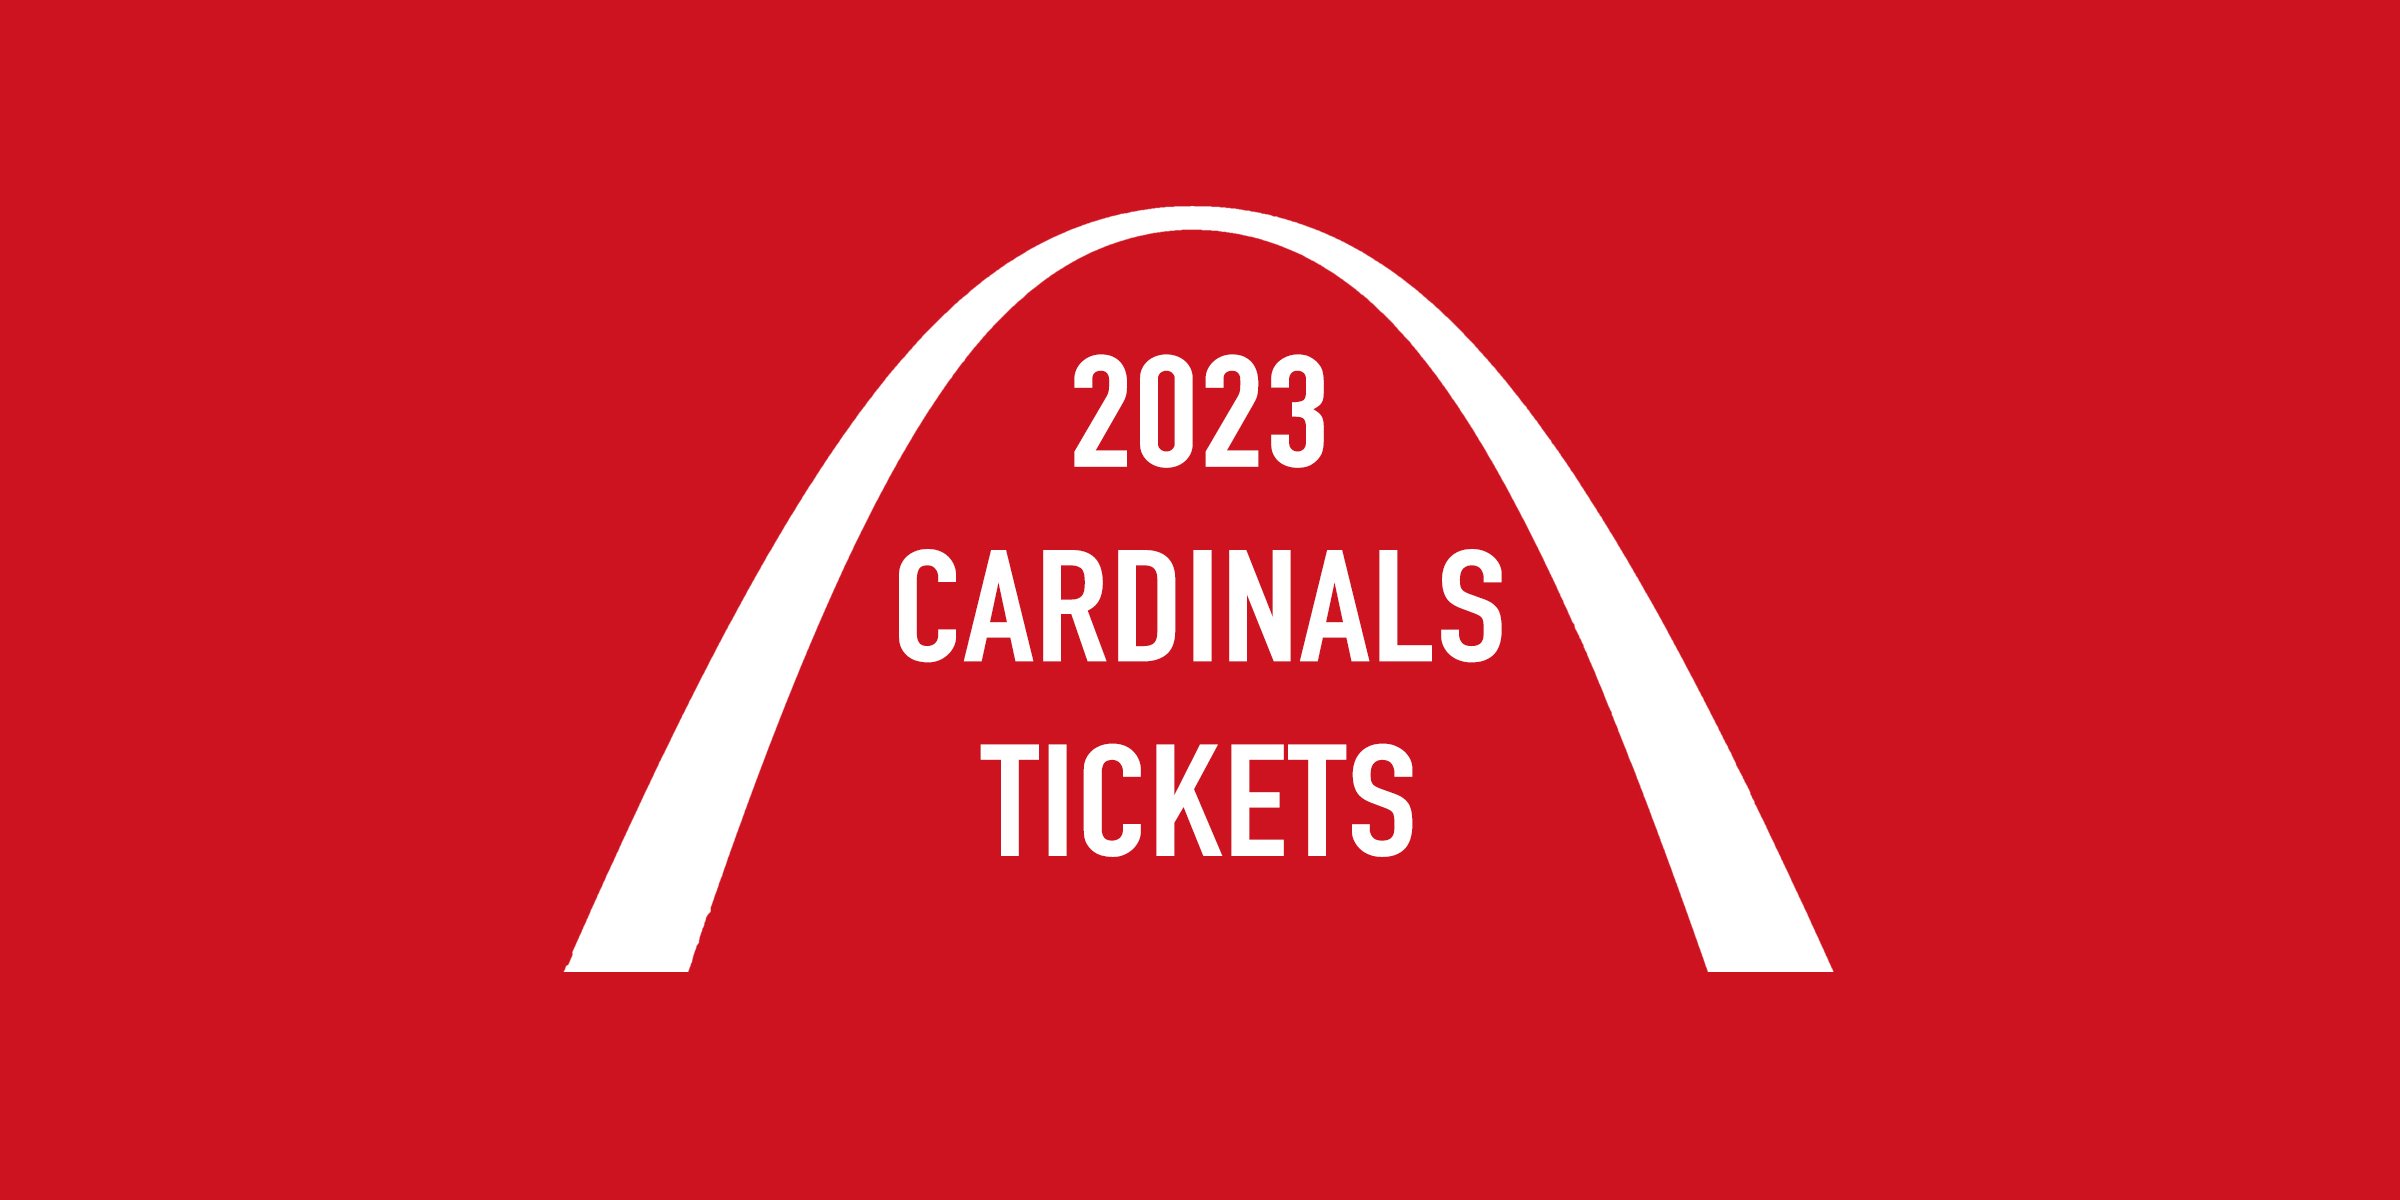 St. Louis Cardinals Tickets 2023 